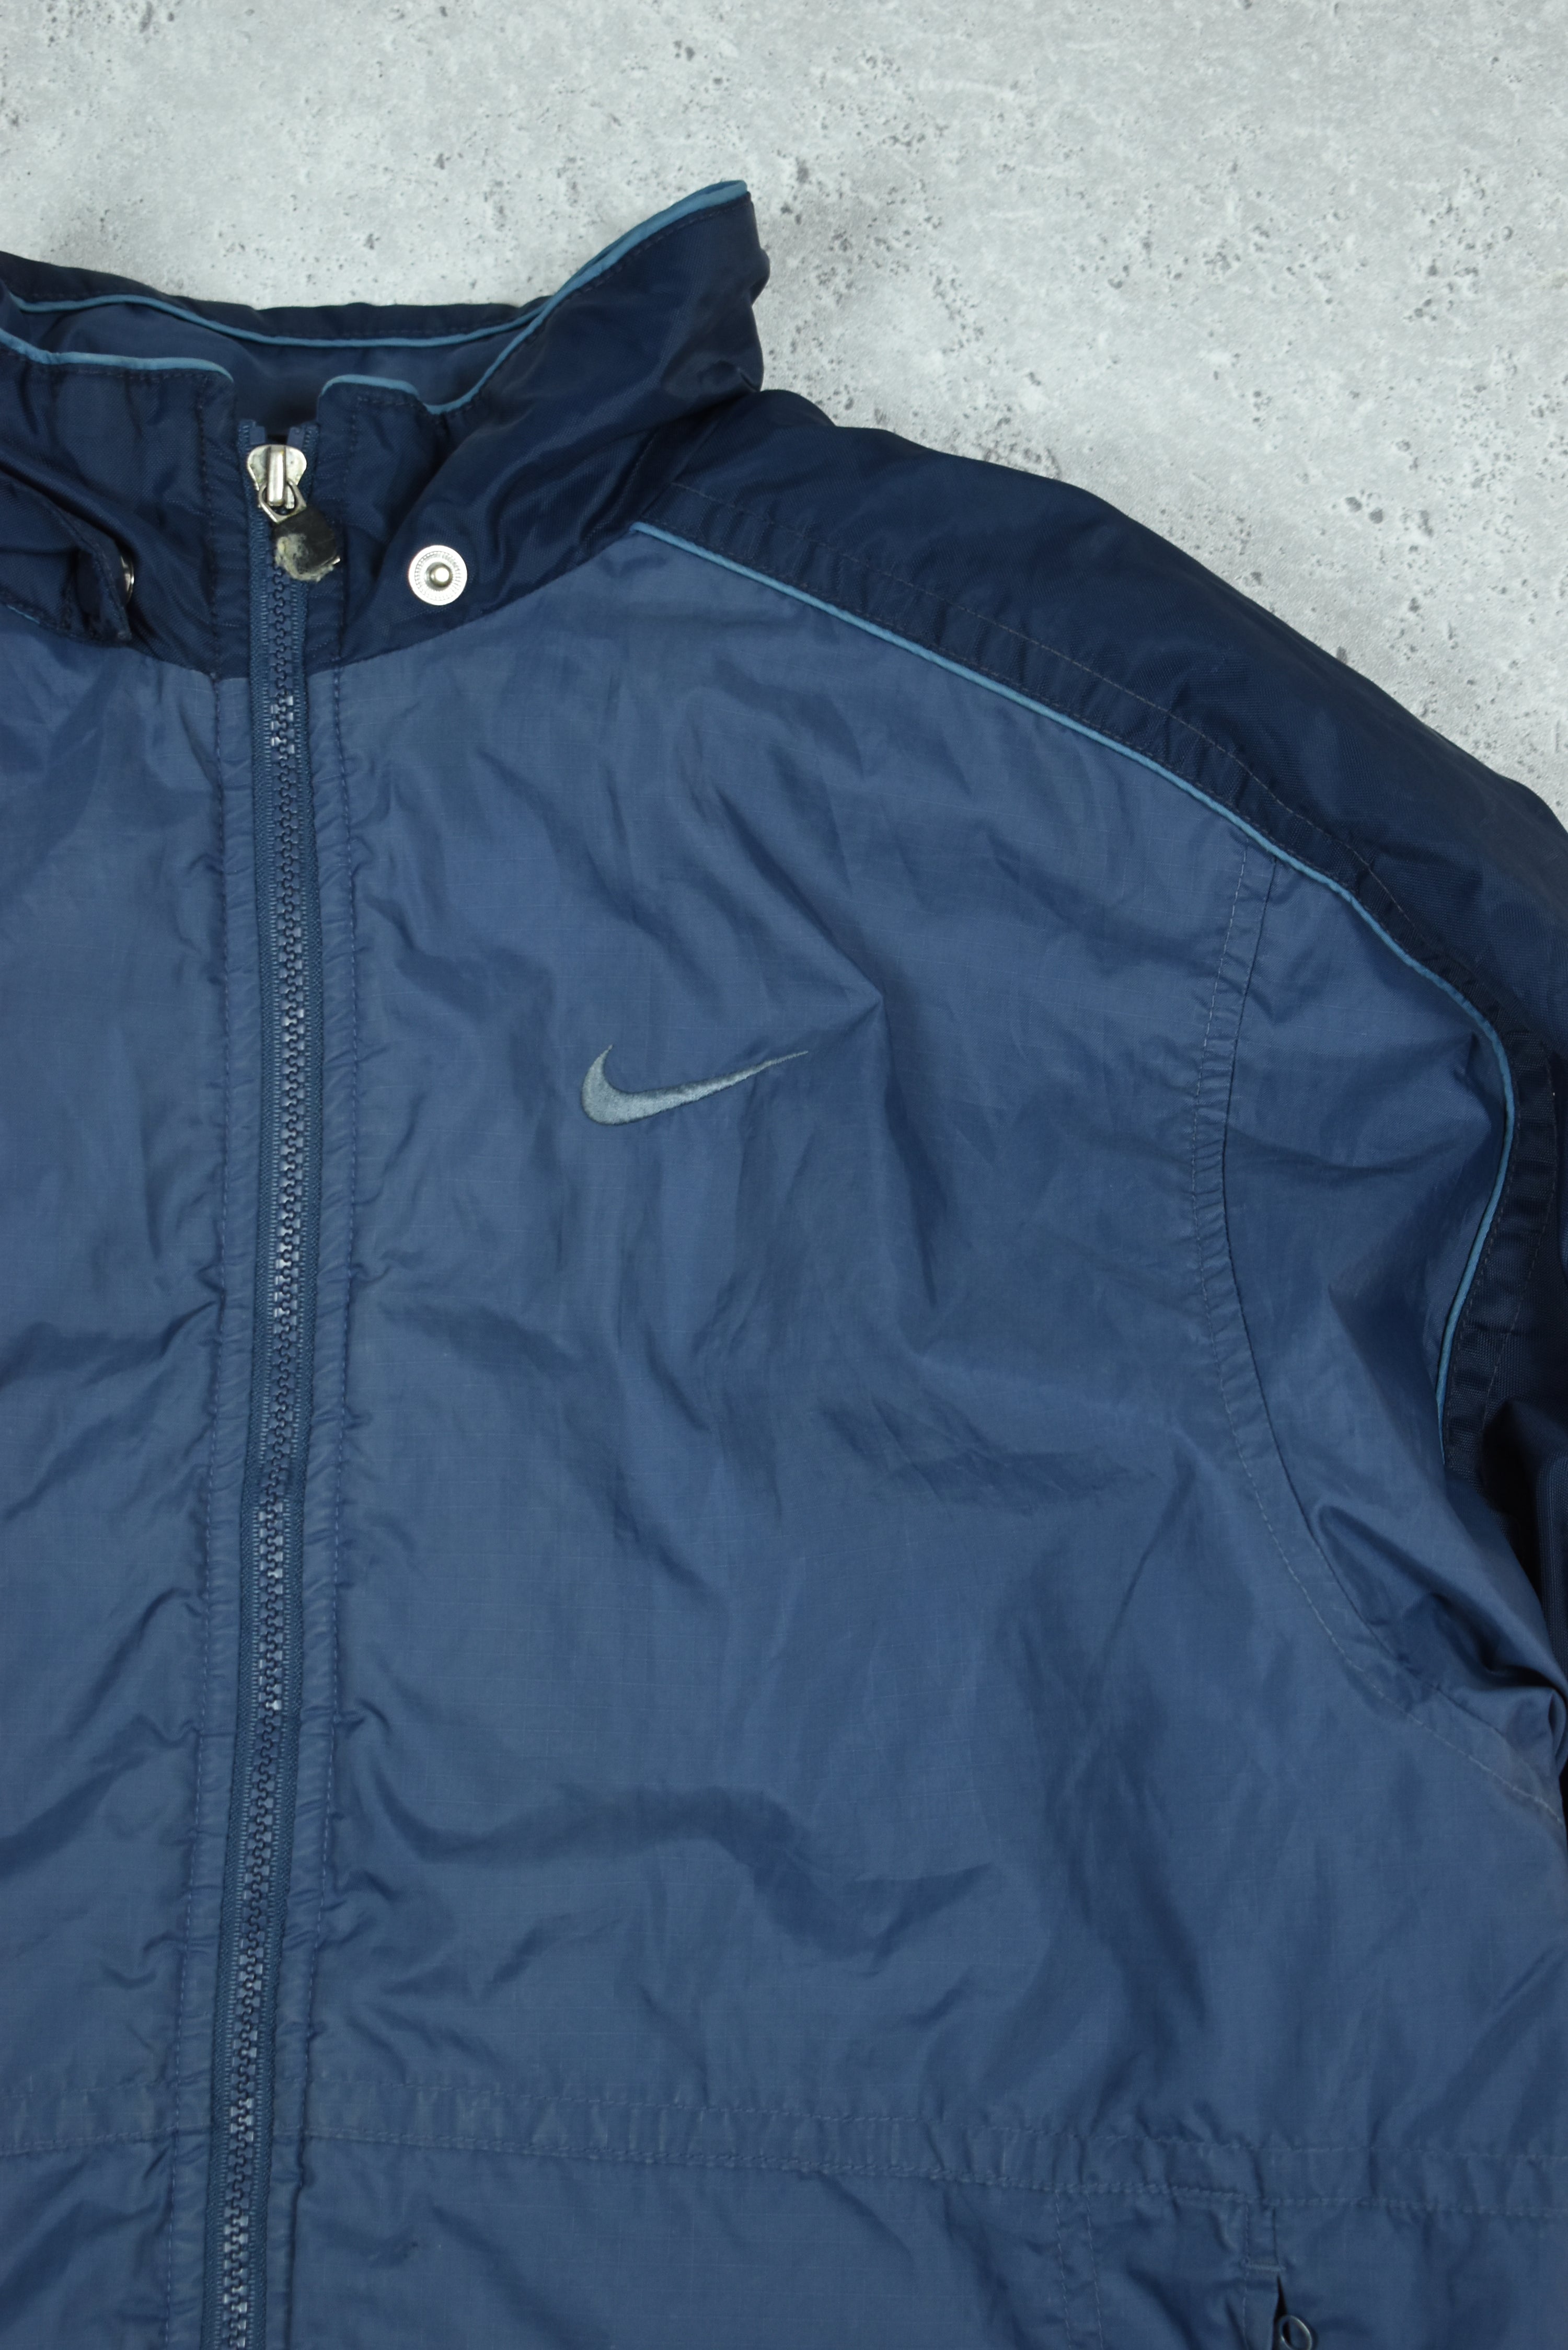 Vintage Nike Puffer Jacket Double Sided Large